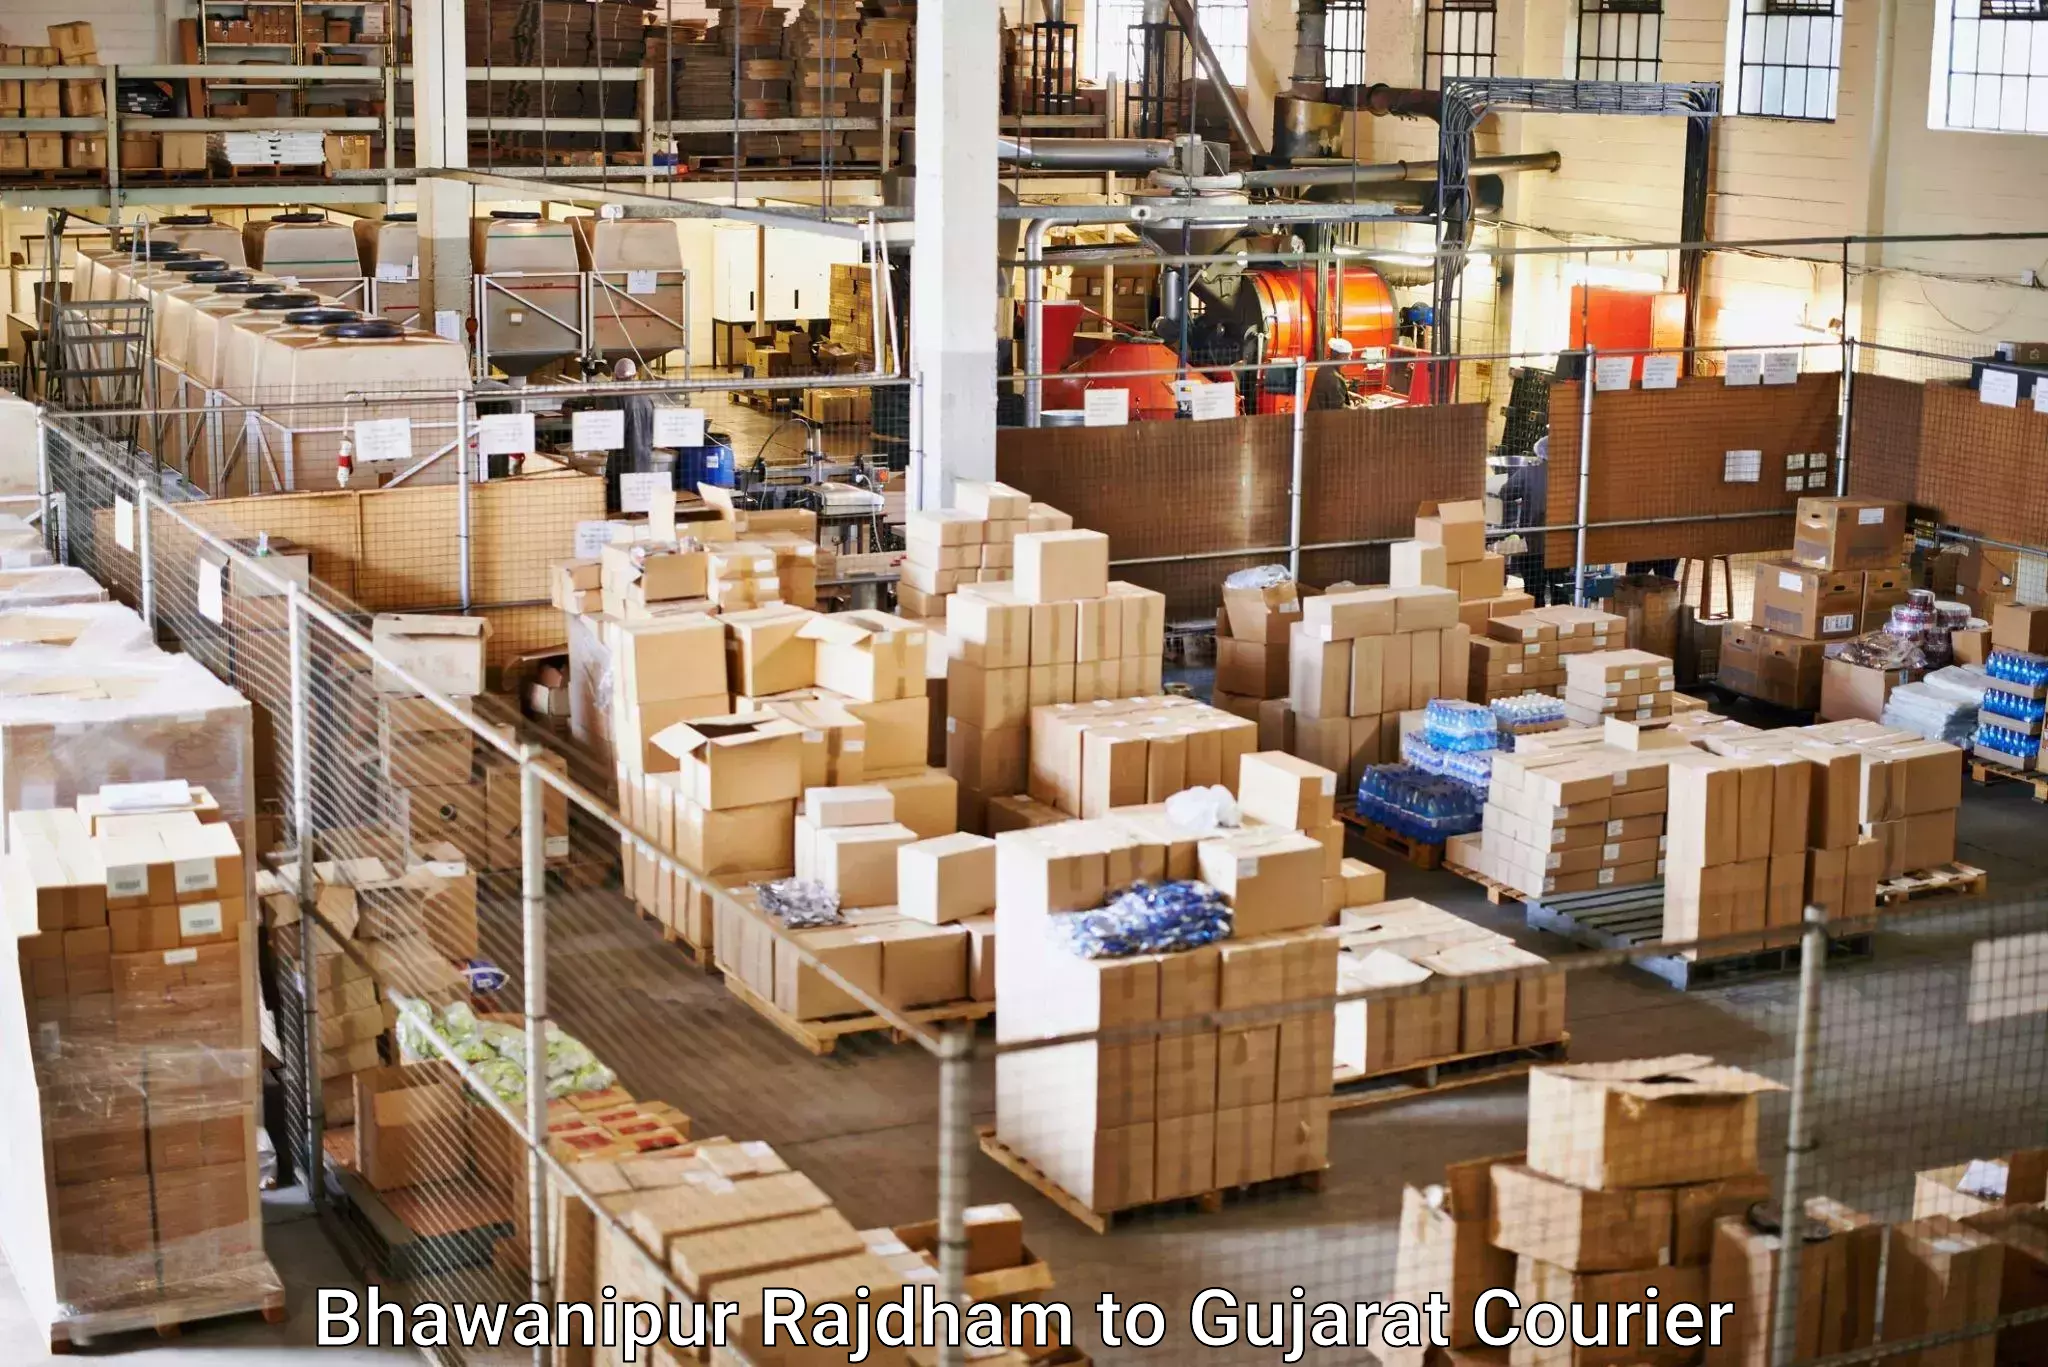 High-capacity parcel service Bhawanipur Rajdham to Kadi